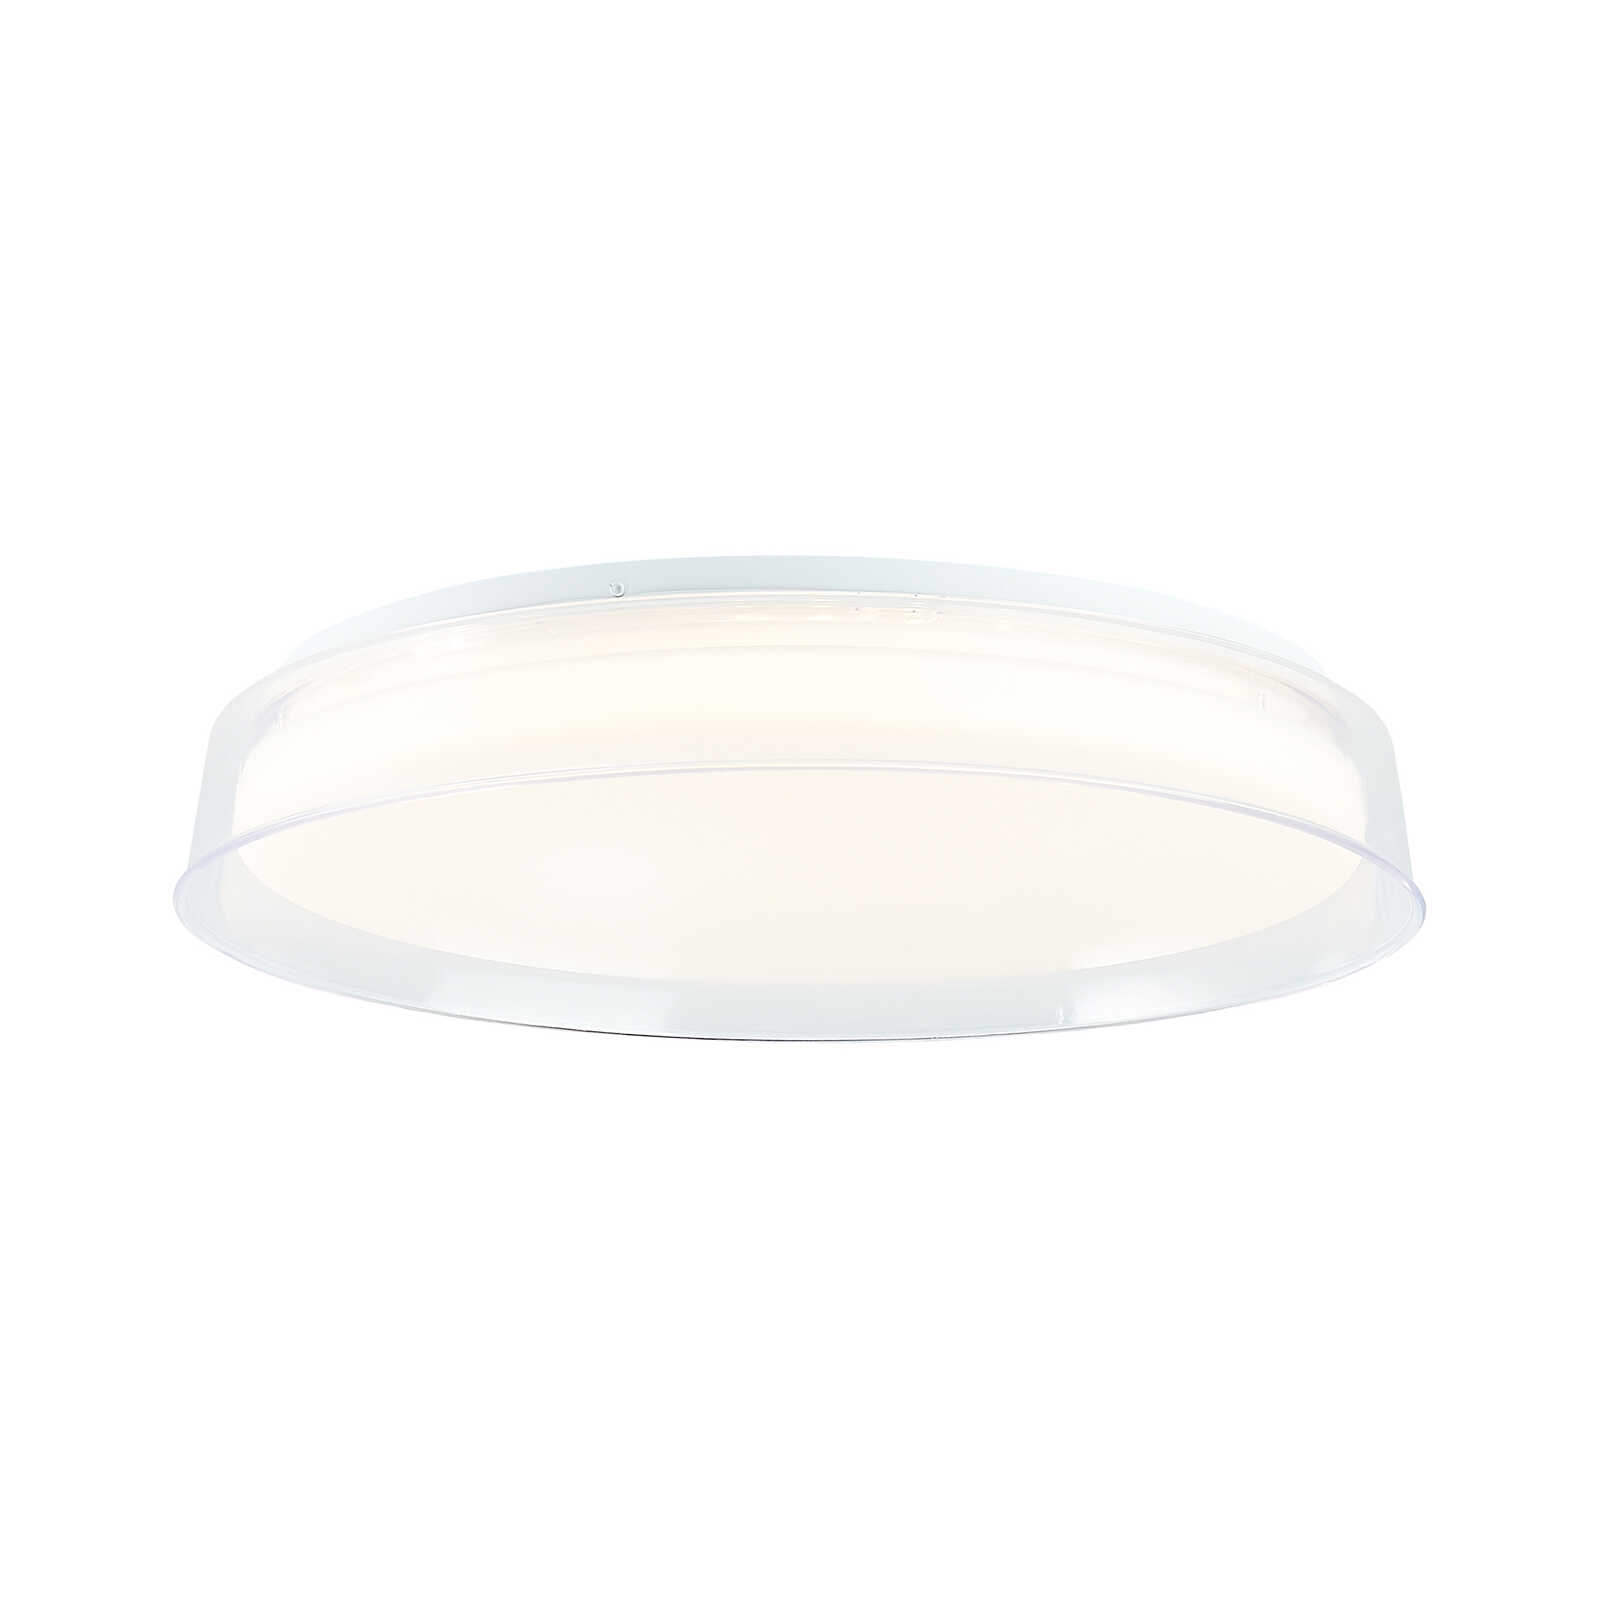 Plastic ceiling light - Lara - White
